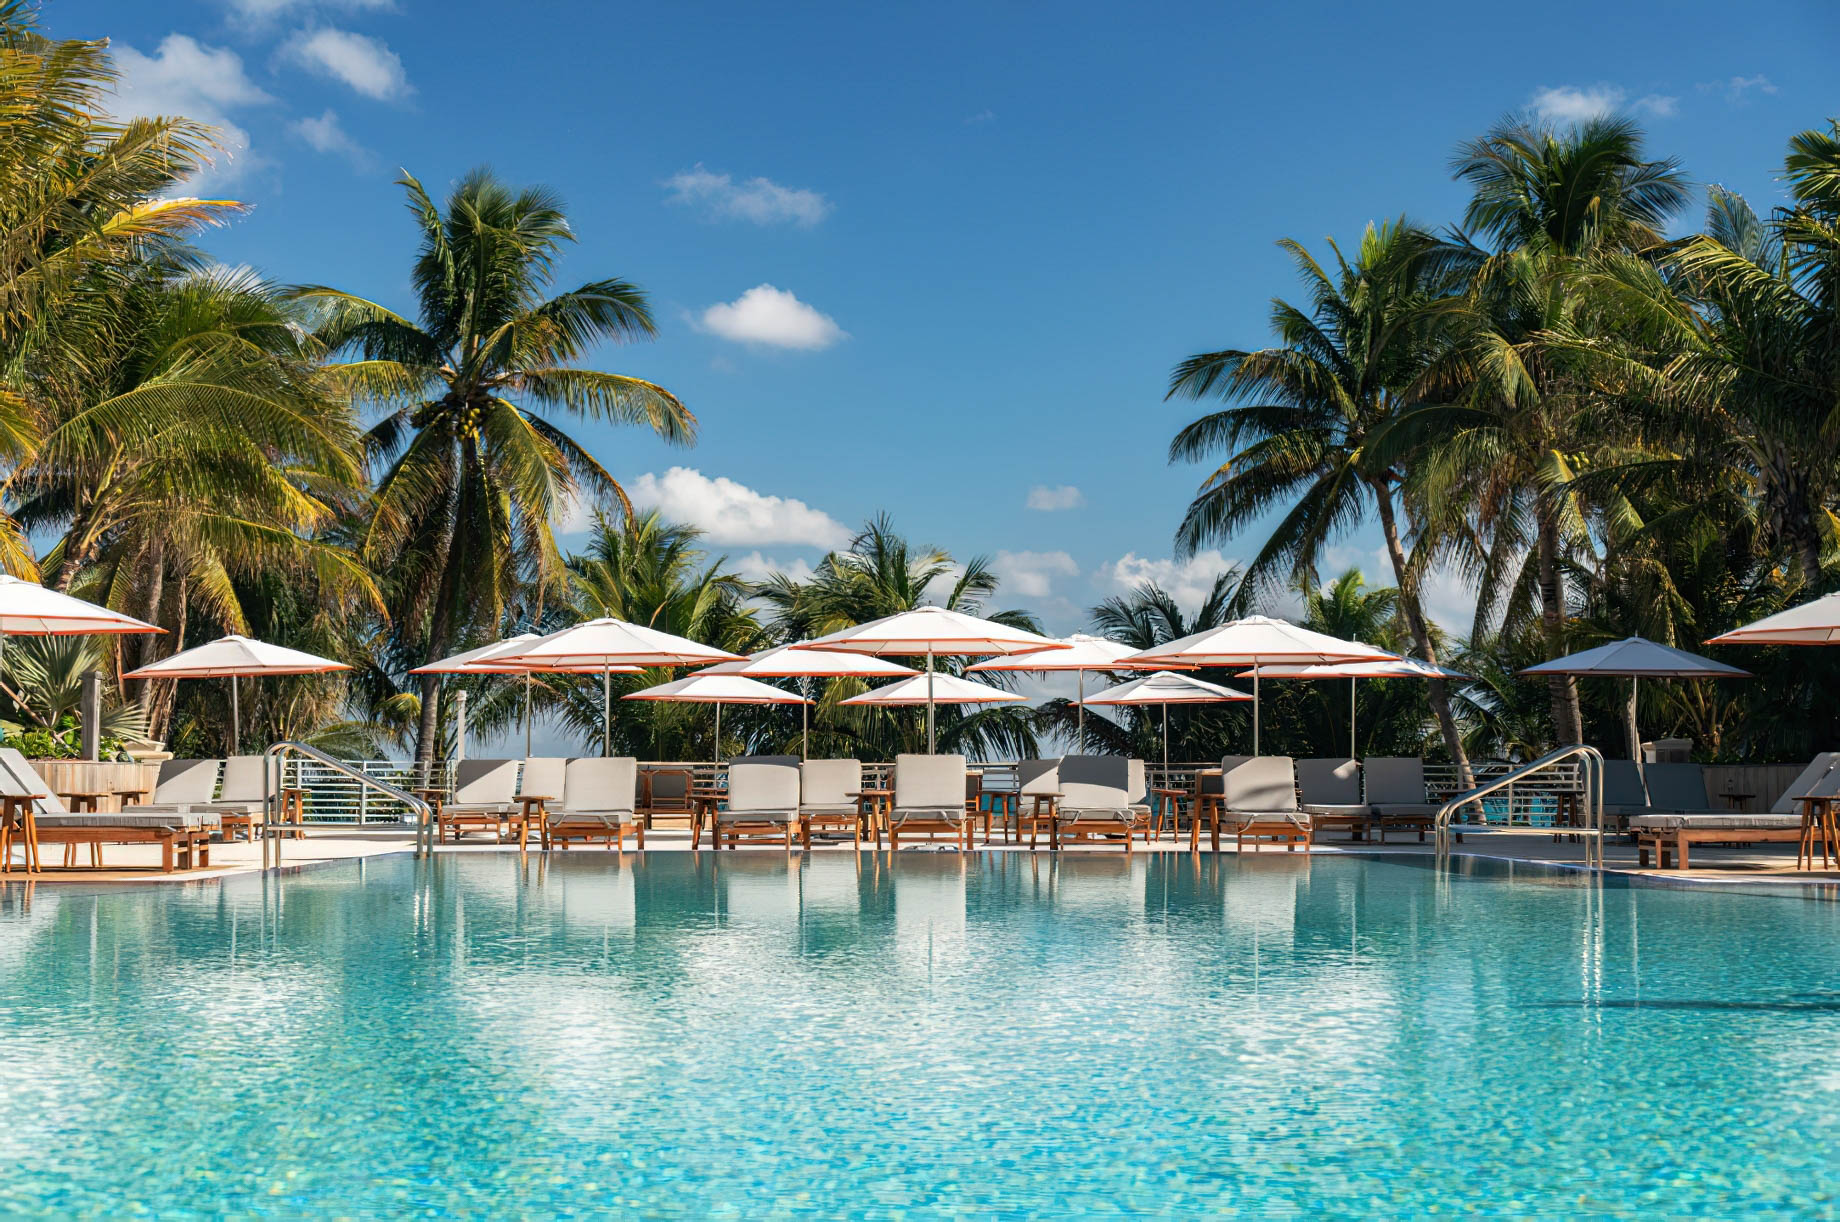 The Ritz-Carlton, South Beach Hotel – Miami Beach, FL, USA – Exterior Pool Deck